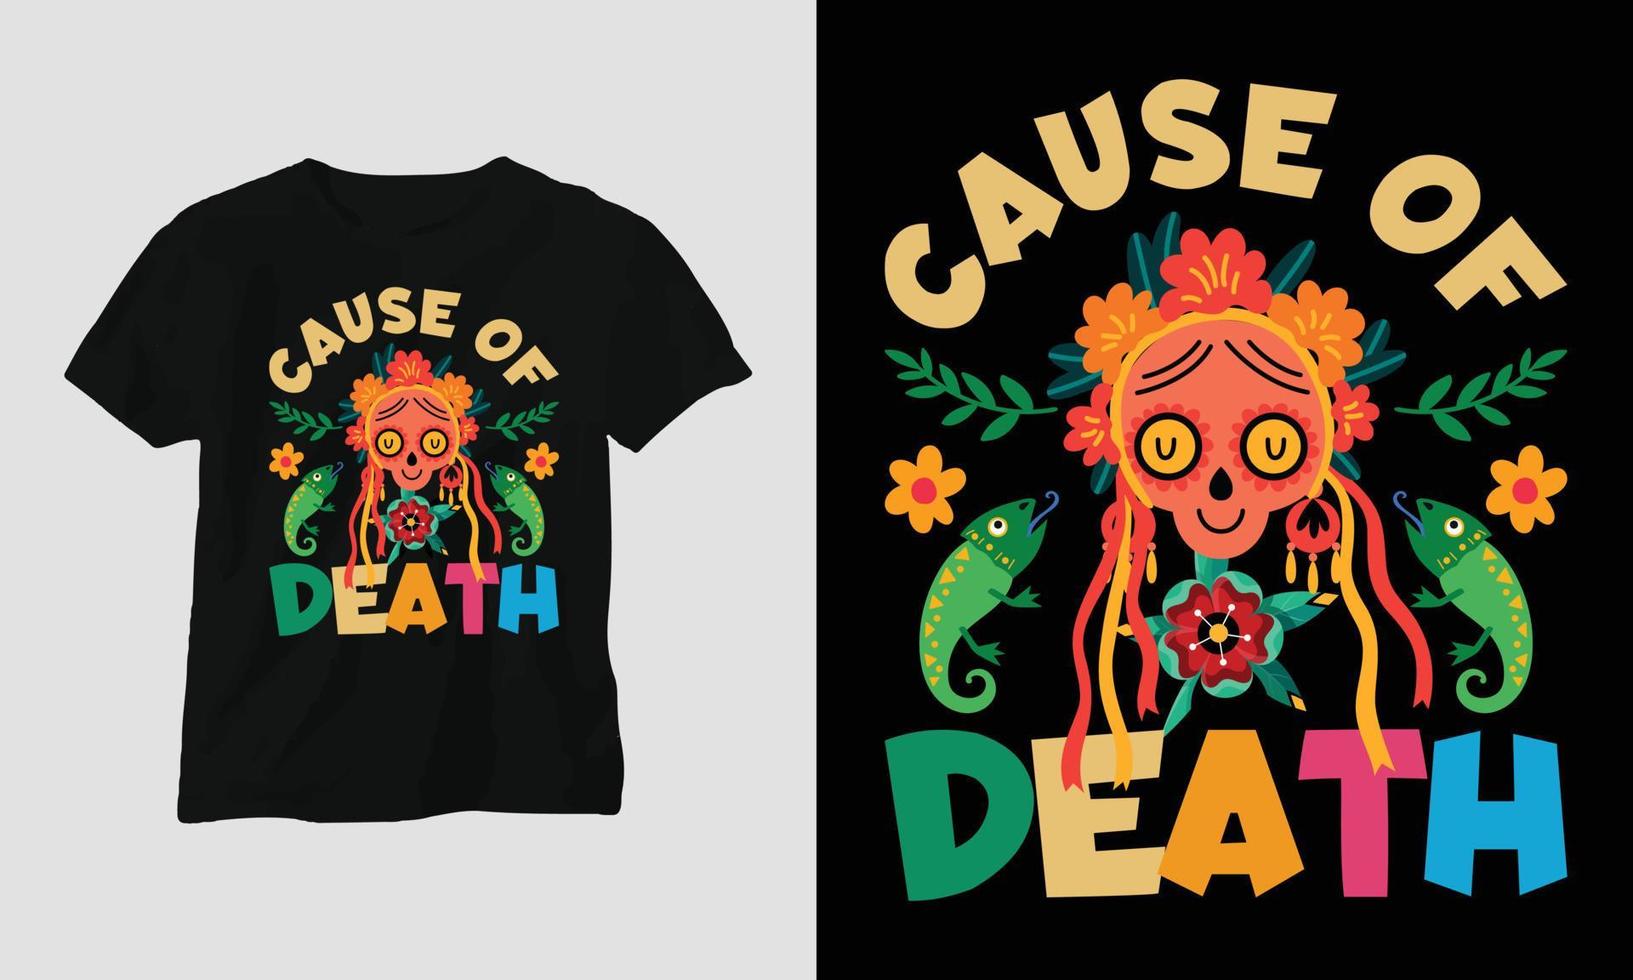 orsak av död - dia de los muertos t-shirt design vektor